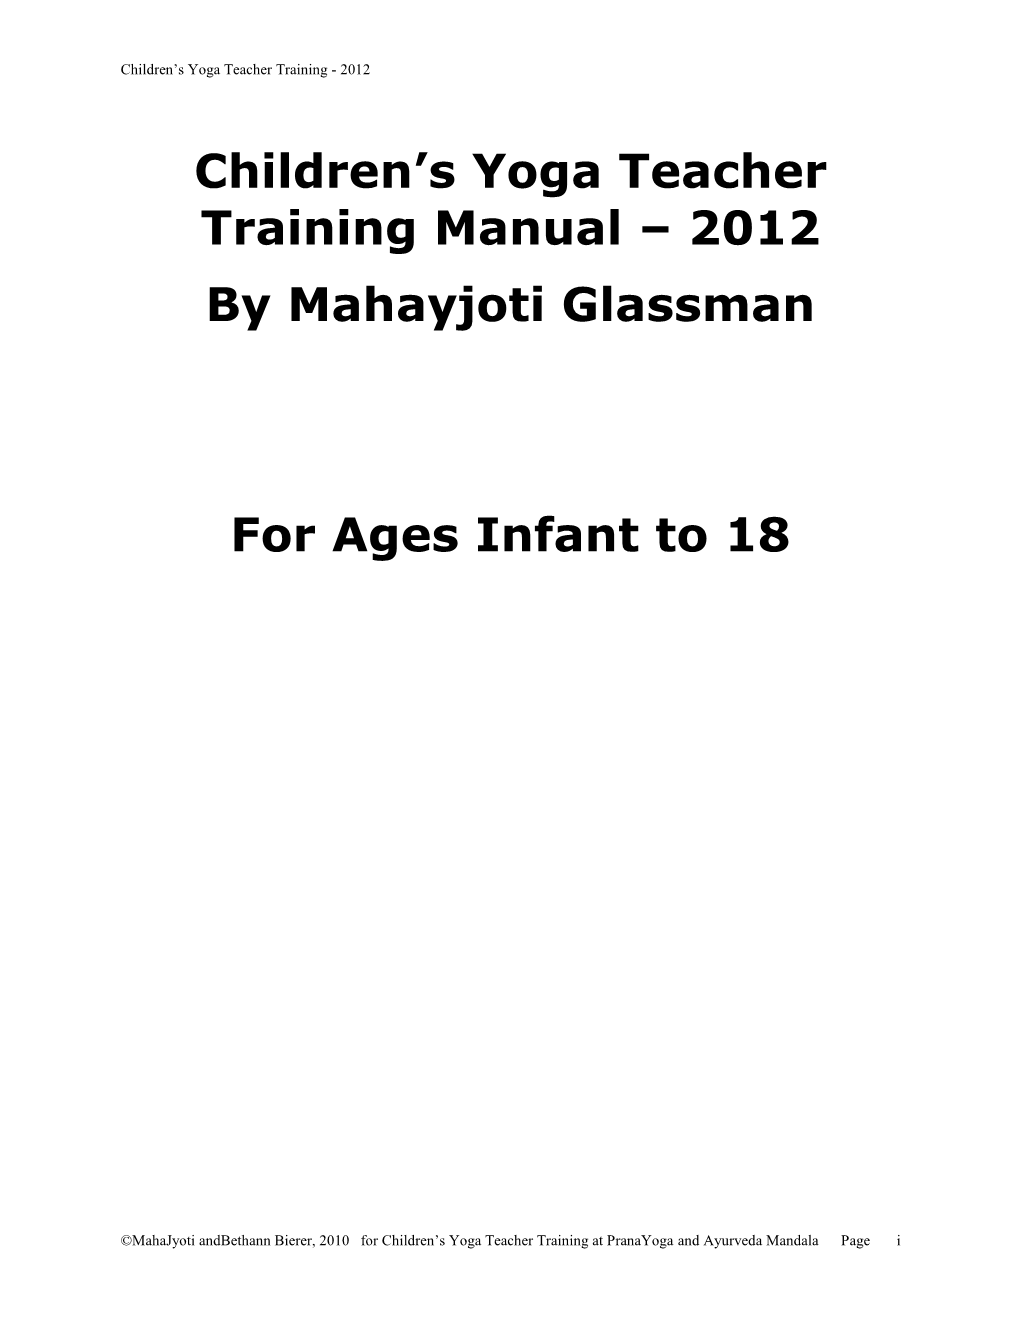 Children's Yoga Teacher Training Manual